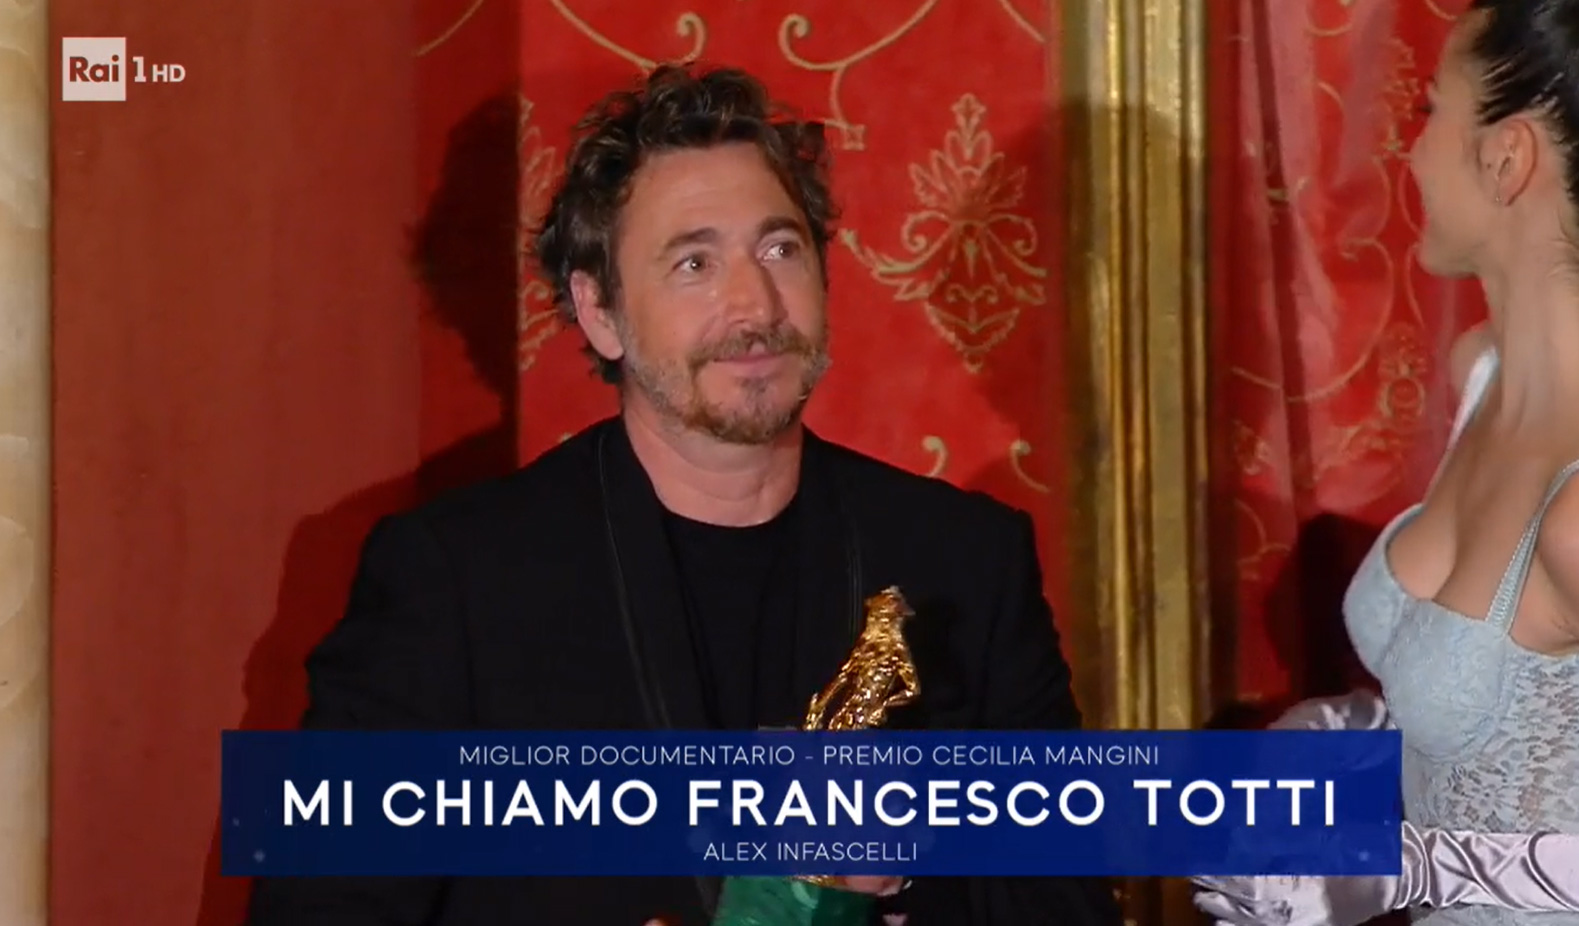 David di Donatello 2021  - Miglior Documentario a 'Mi chiamo Francesco Totti' di Alex Infascelli